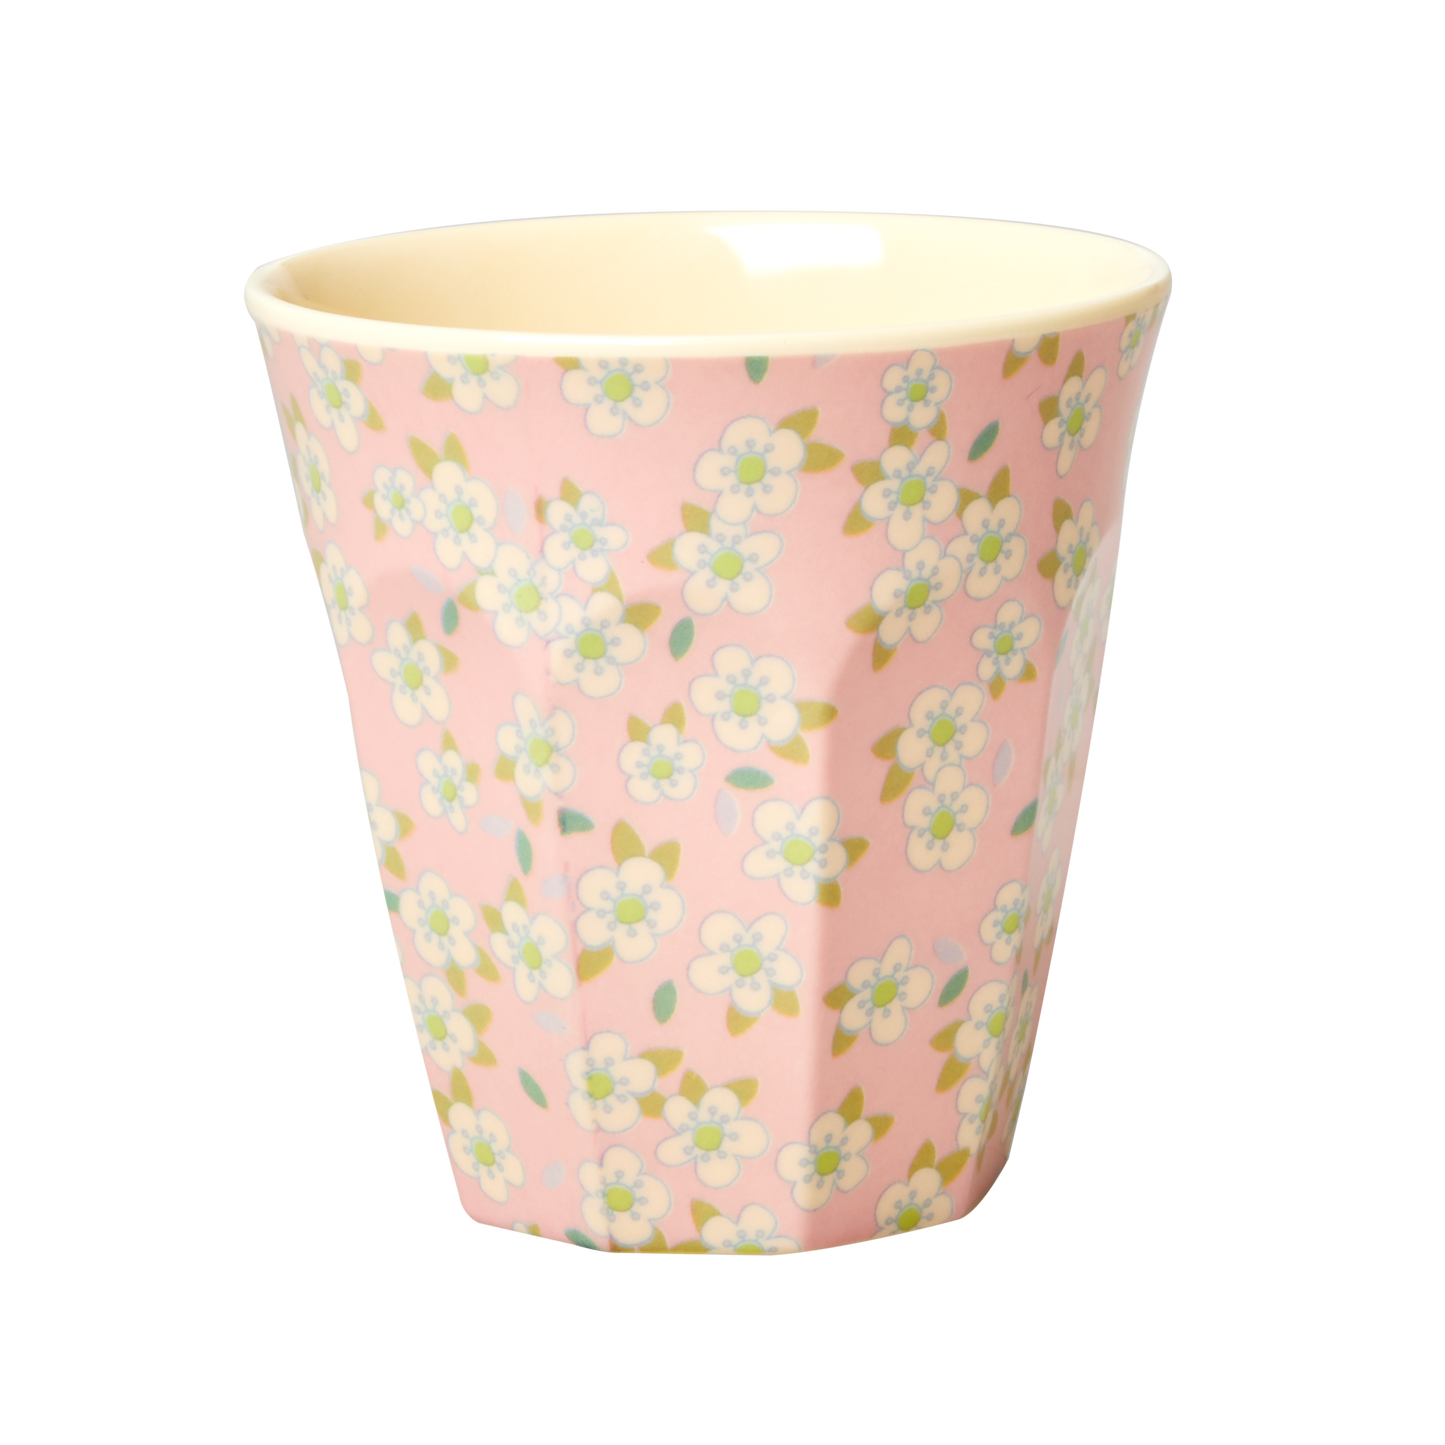 כוס מלמין טוטון בהדפס פרחים פסטל